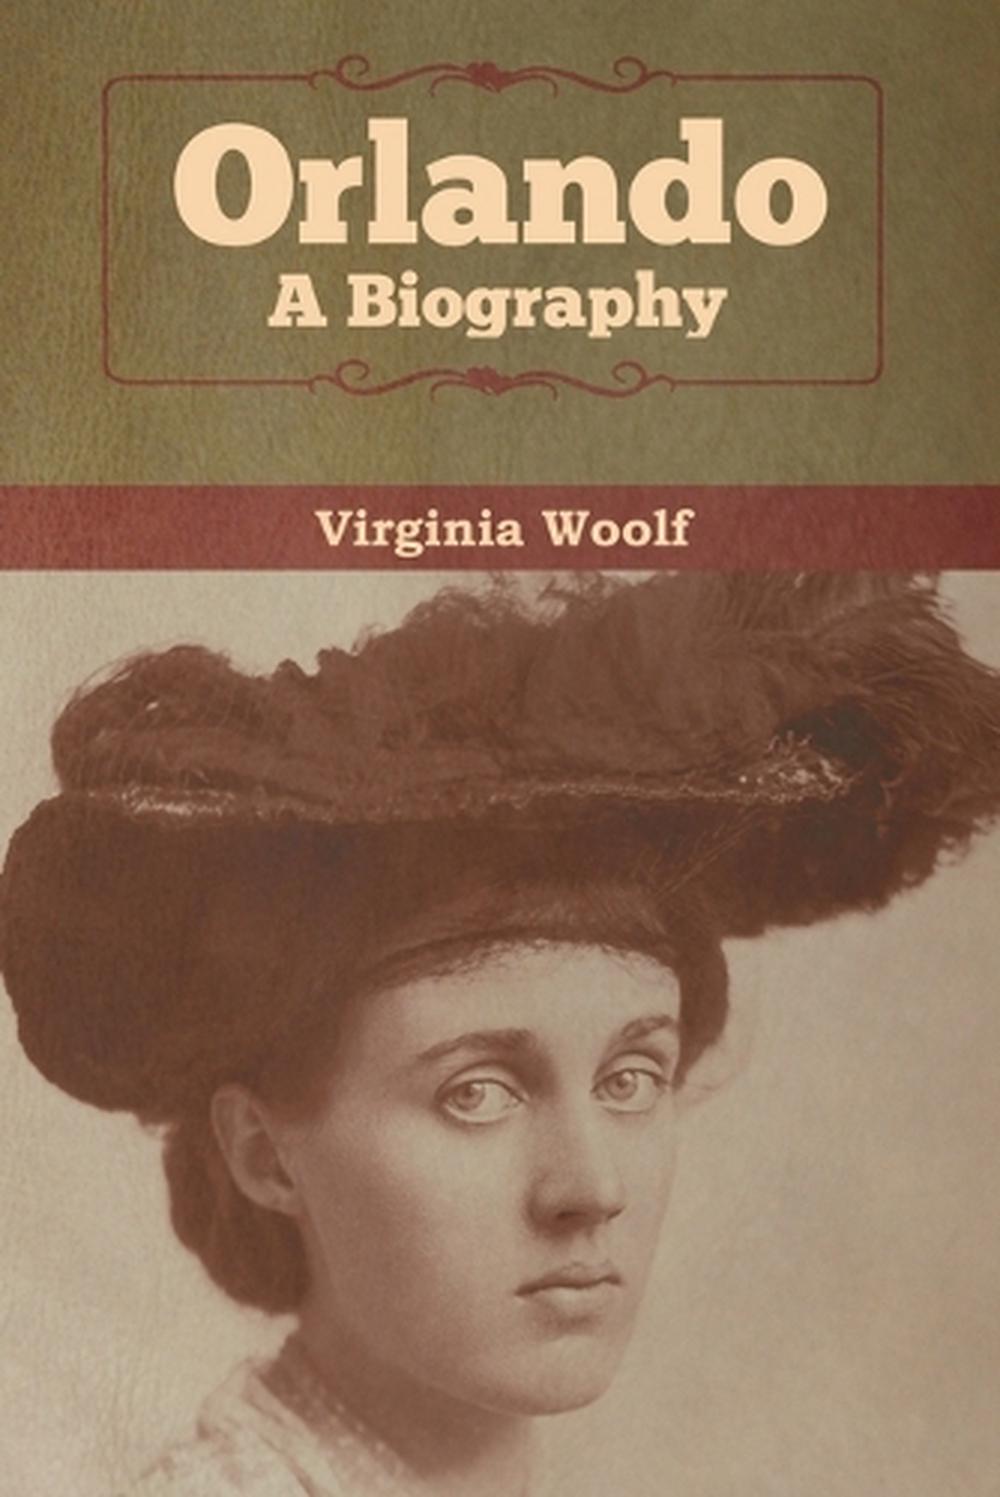 virginia woolf biography movie